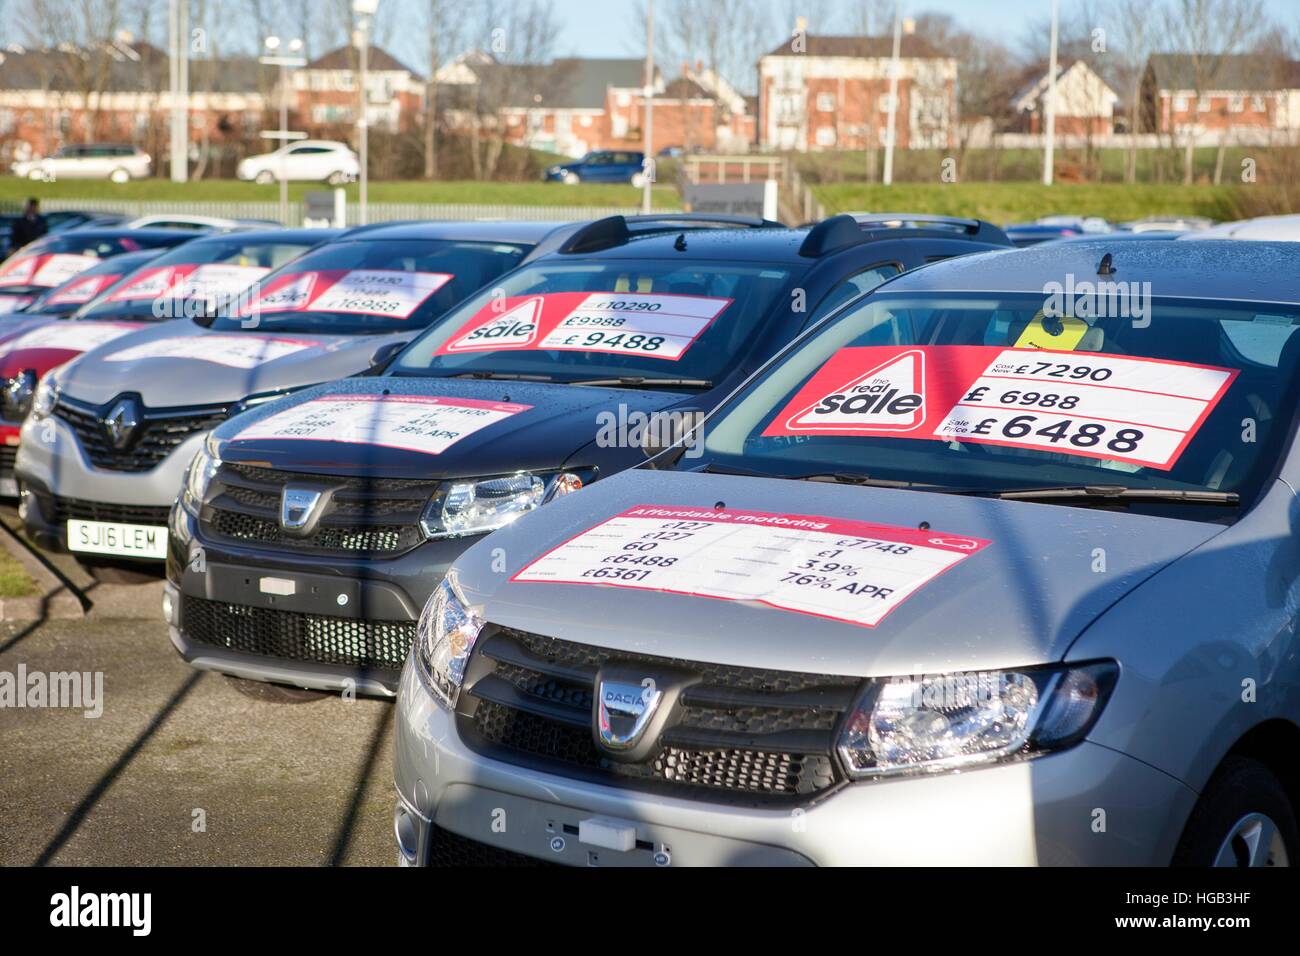 Dacia veicoli scontati, auto berlina di seconda mano allineati su piazzale garage auto usate con adesivi Apr 'vendita reale' Deal, Preston, Lancashire, Regno Unito. Foto Stock